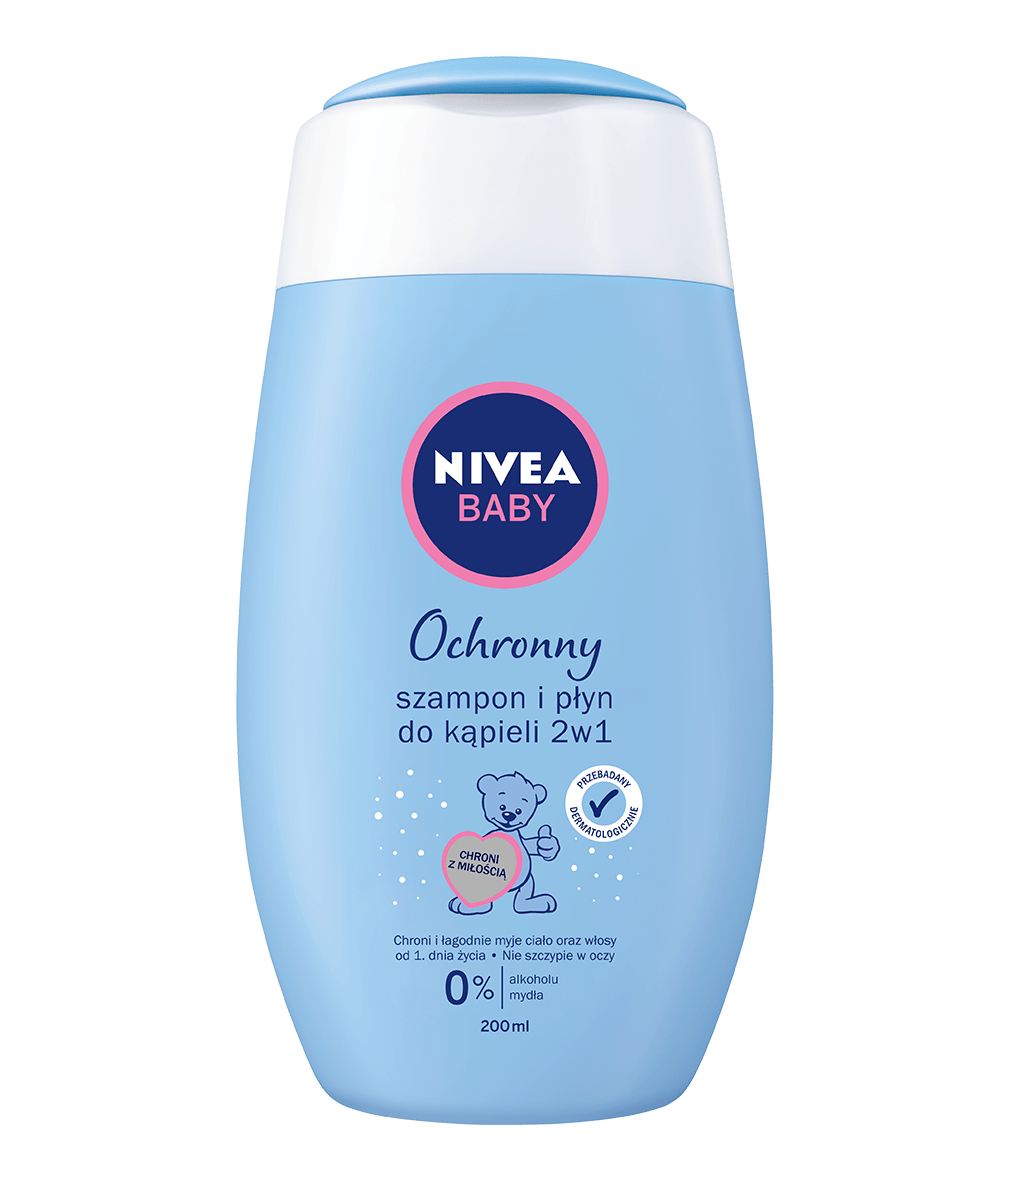 szampon micelarny nivea baby skład